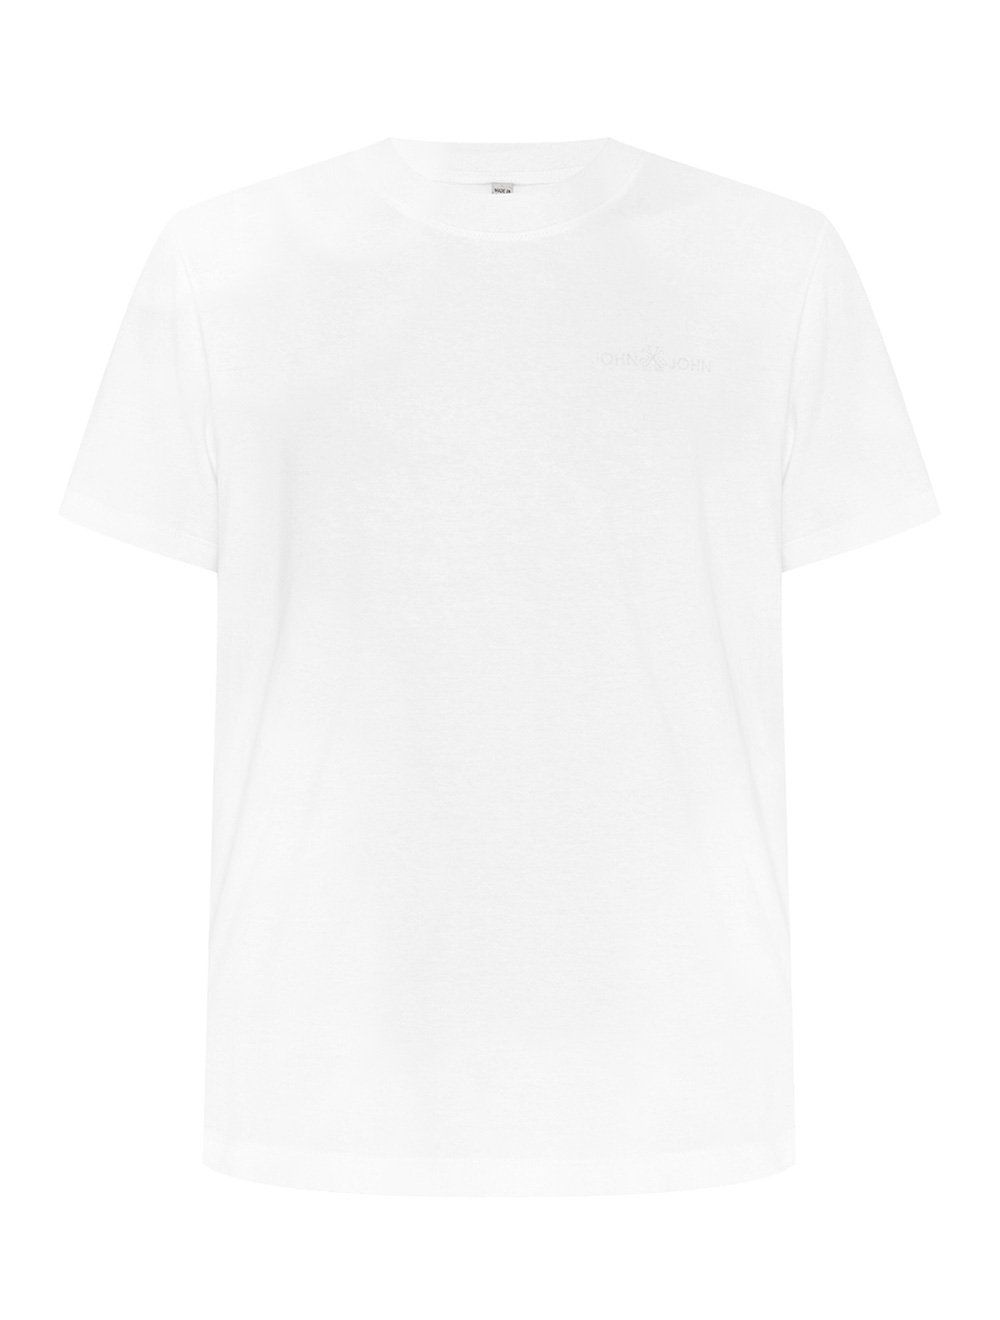 Camiseta John John Masculina Rx Mini Basic Branca